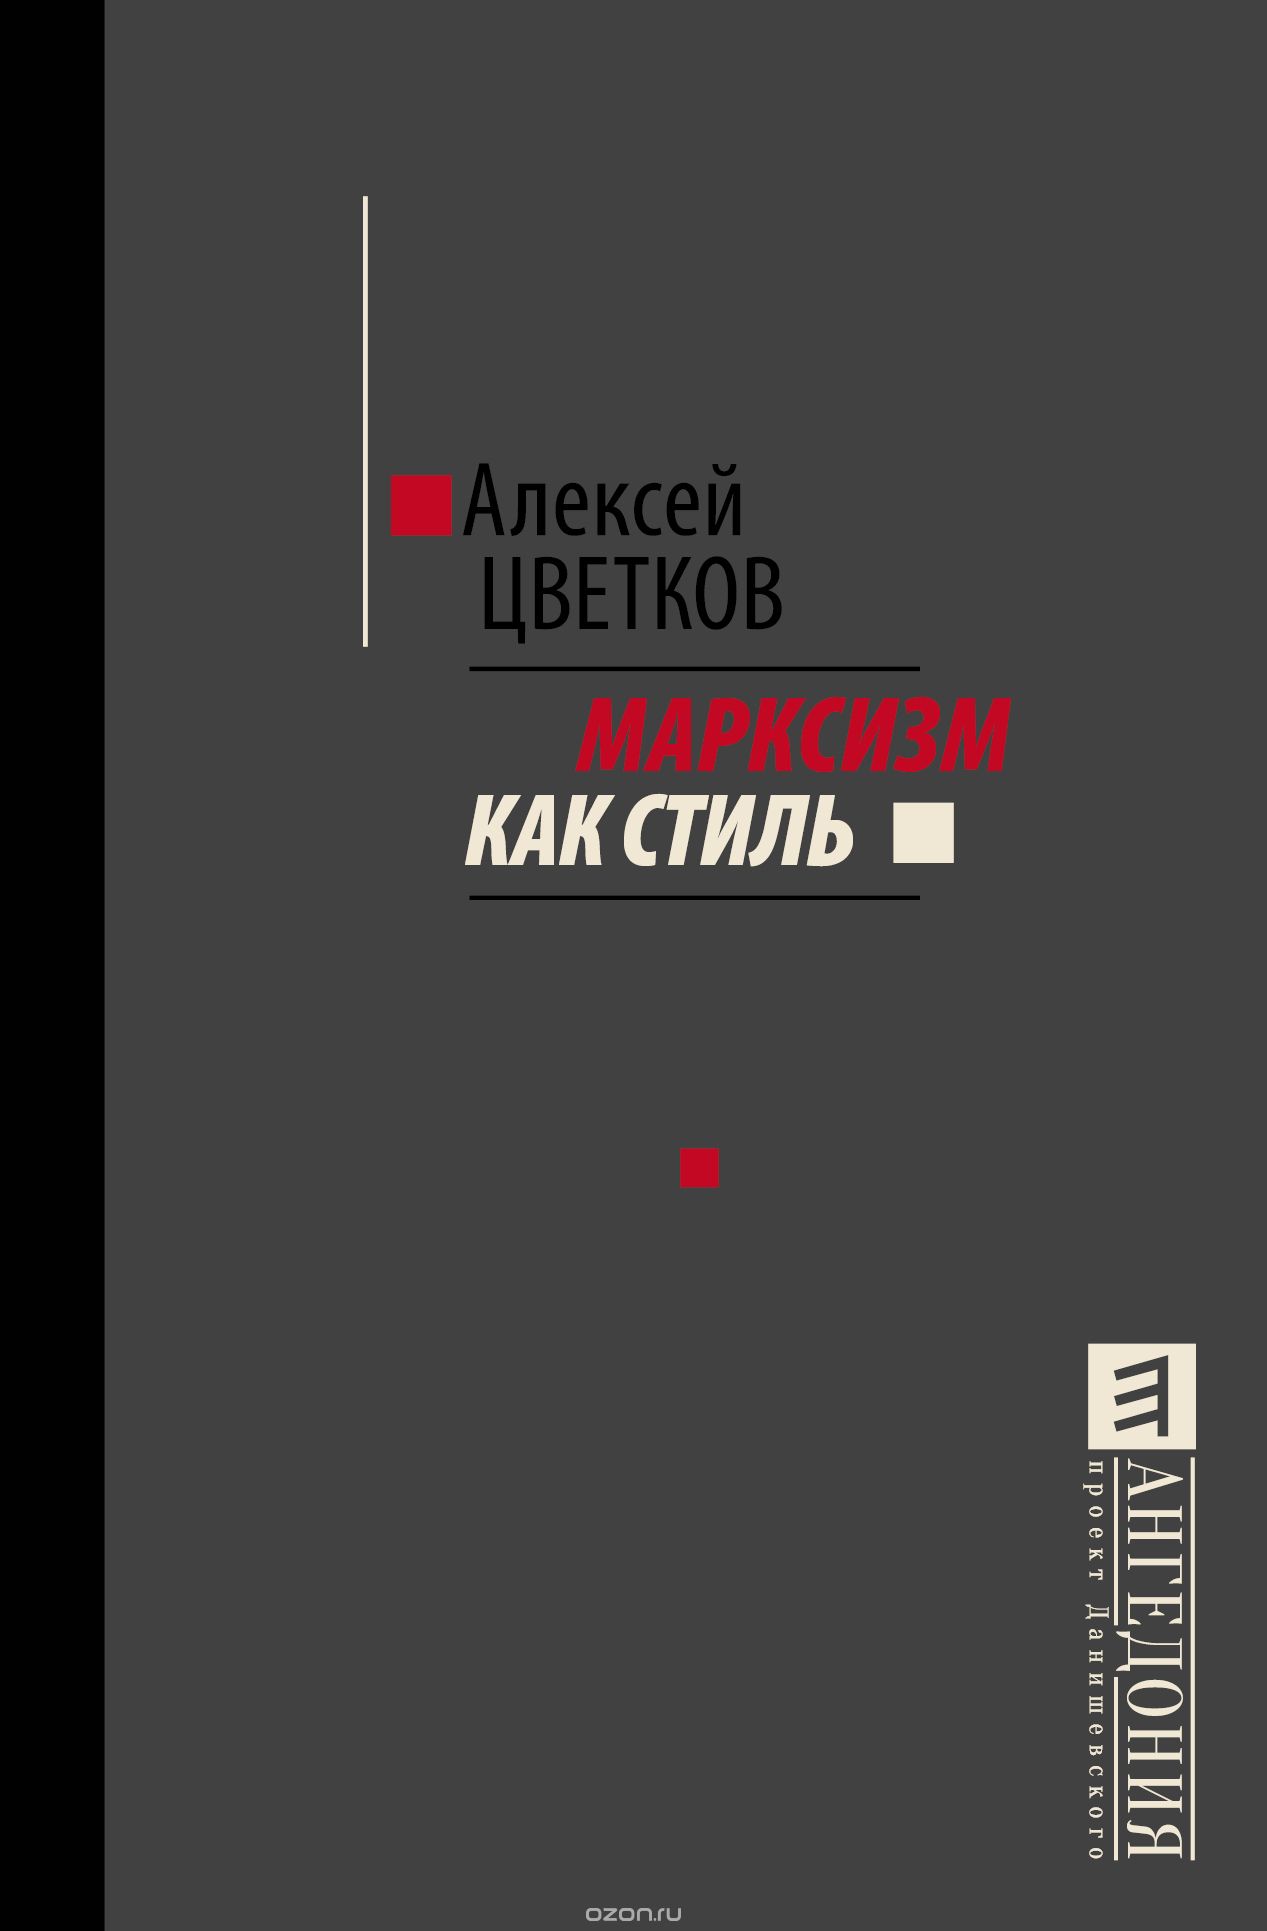 Скачать книгу "Марксизм как стиль, Алексей Цветков"